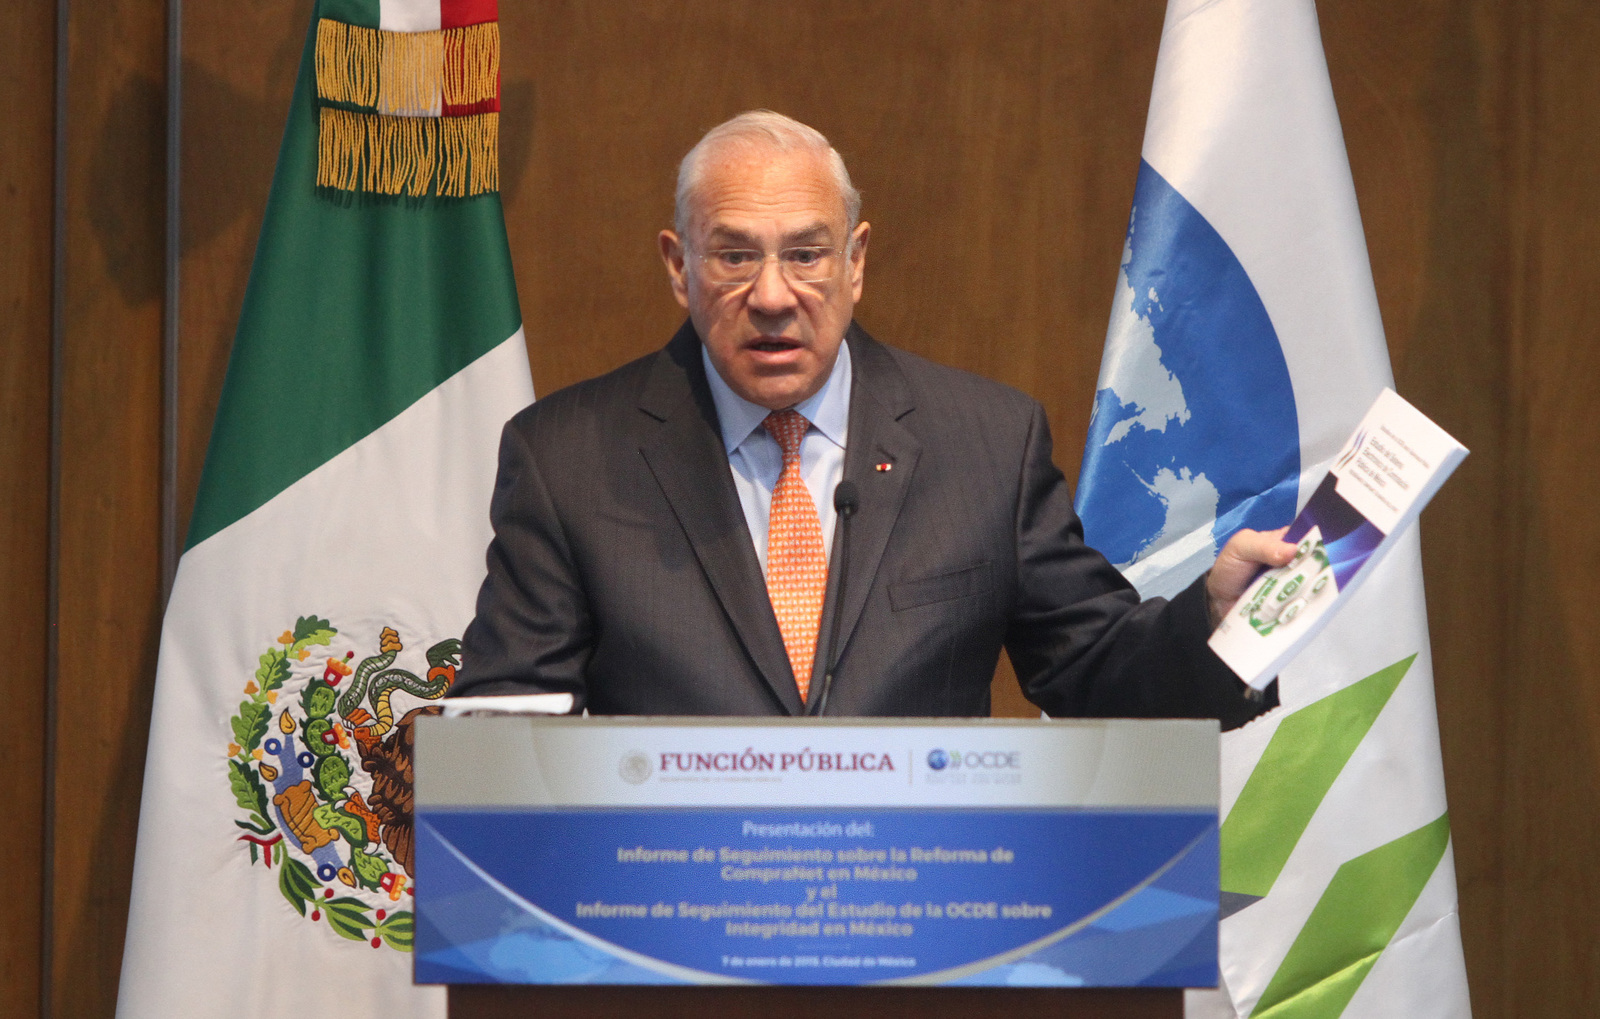 Recorte. José Ángel Gurría señala que será un riesgo para la corrupción recortar salarios. (ARCHIVO)